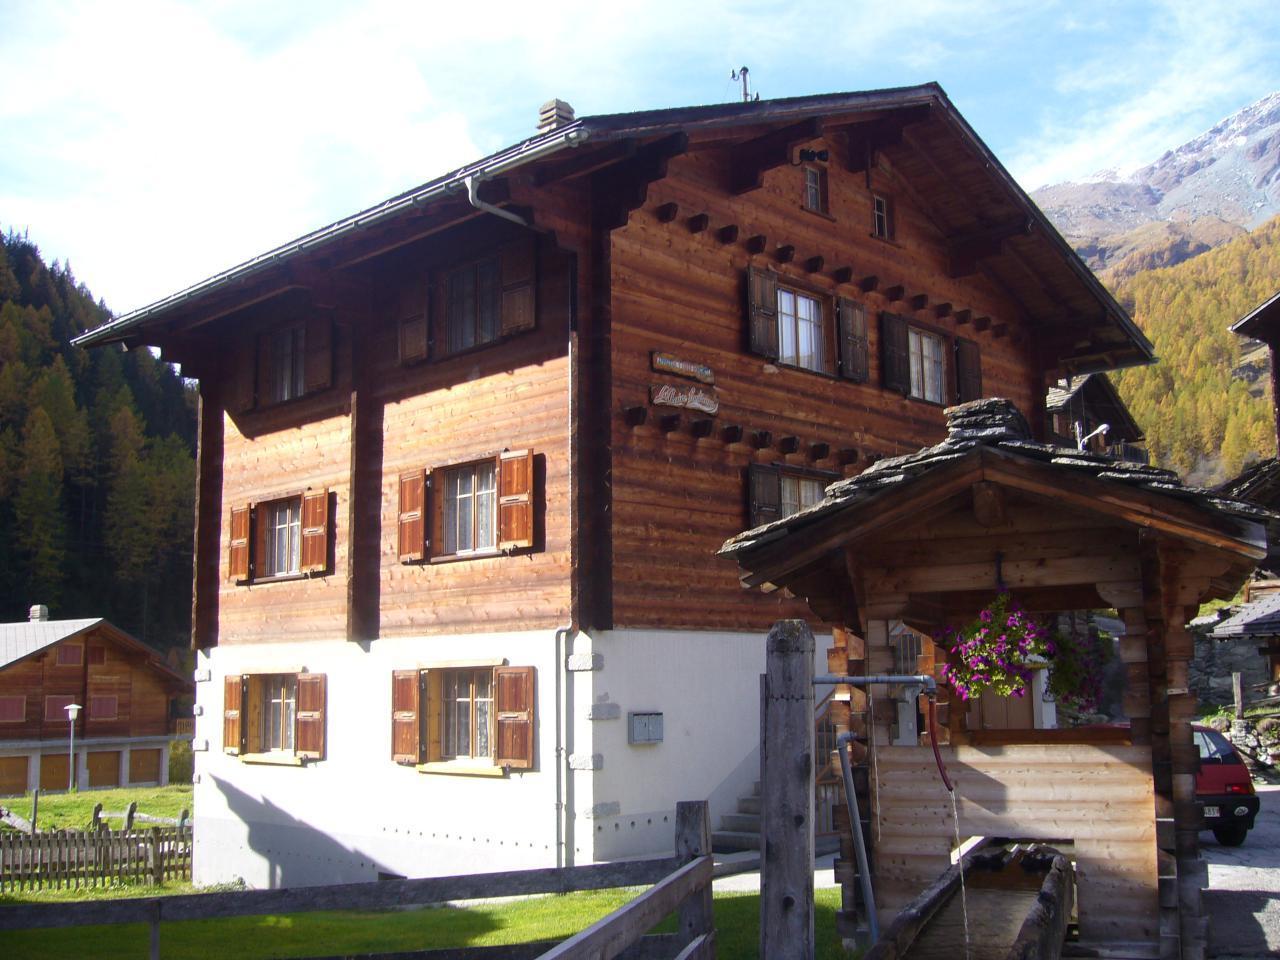 Ferienwohnung Claire Fontaine Ferienhaus in der Schweiz